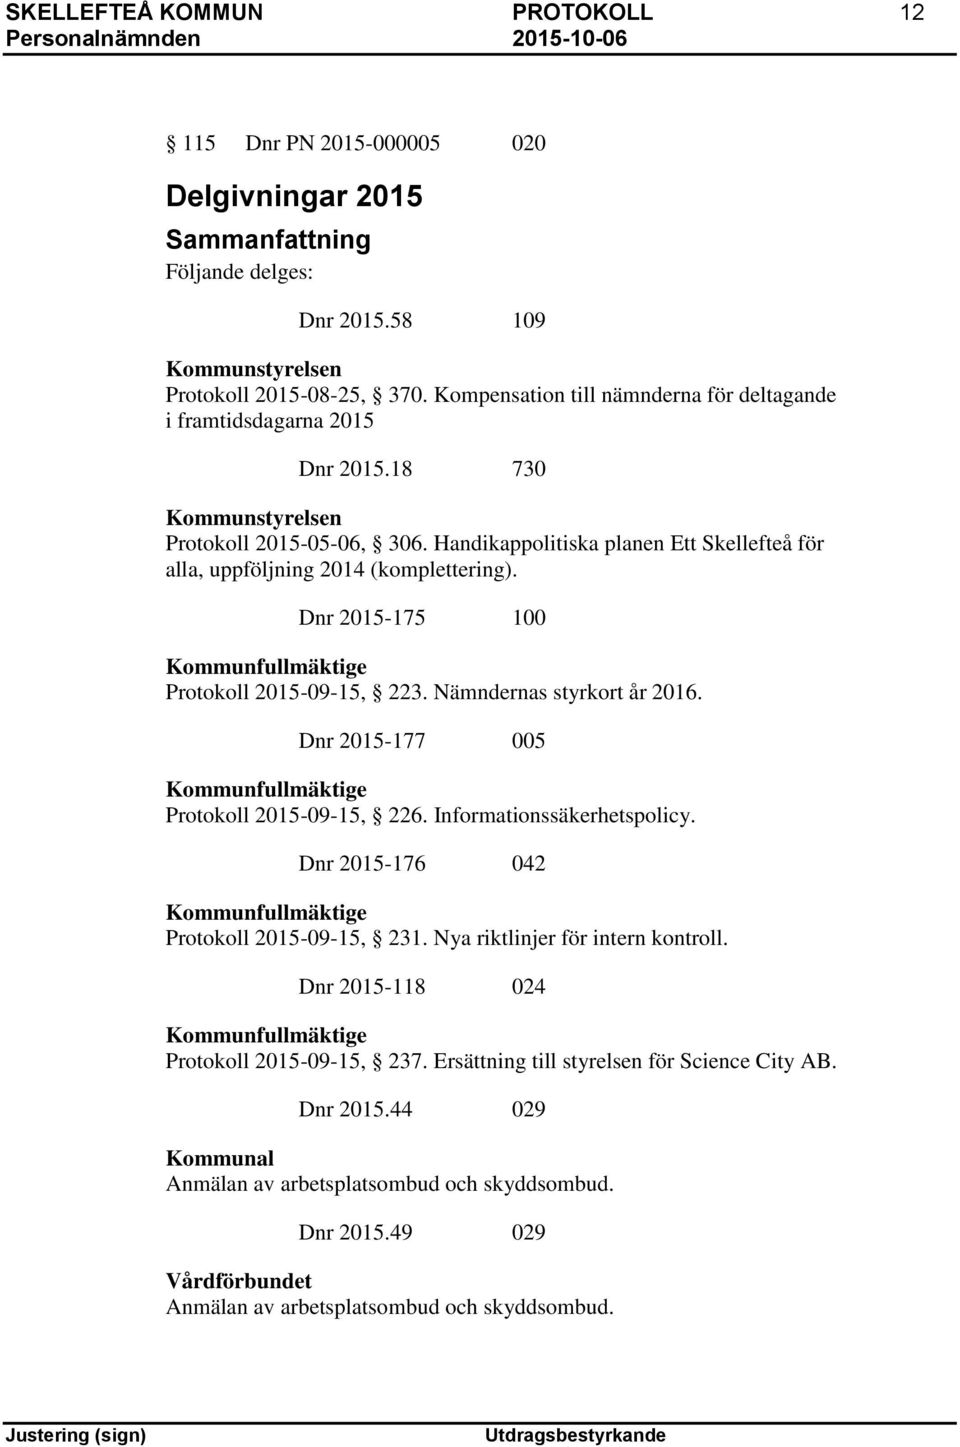 Handikappolitiska planen Ett Skellefteå för alla, uppföljning 2014 (komplettering). Dnr 2015-175 100 Kommunfullmäktige Protokoll 2015-09-15, 223. Nämndernas styrkort år 2016.